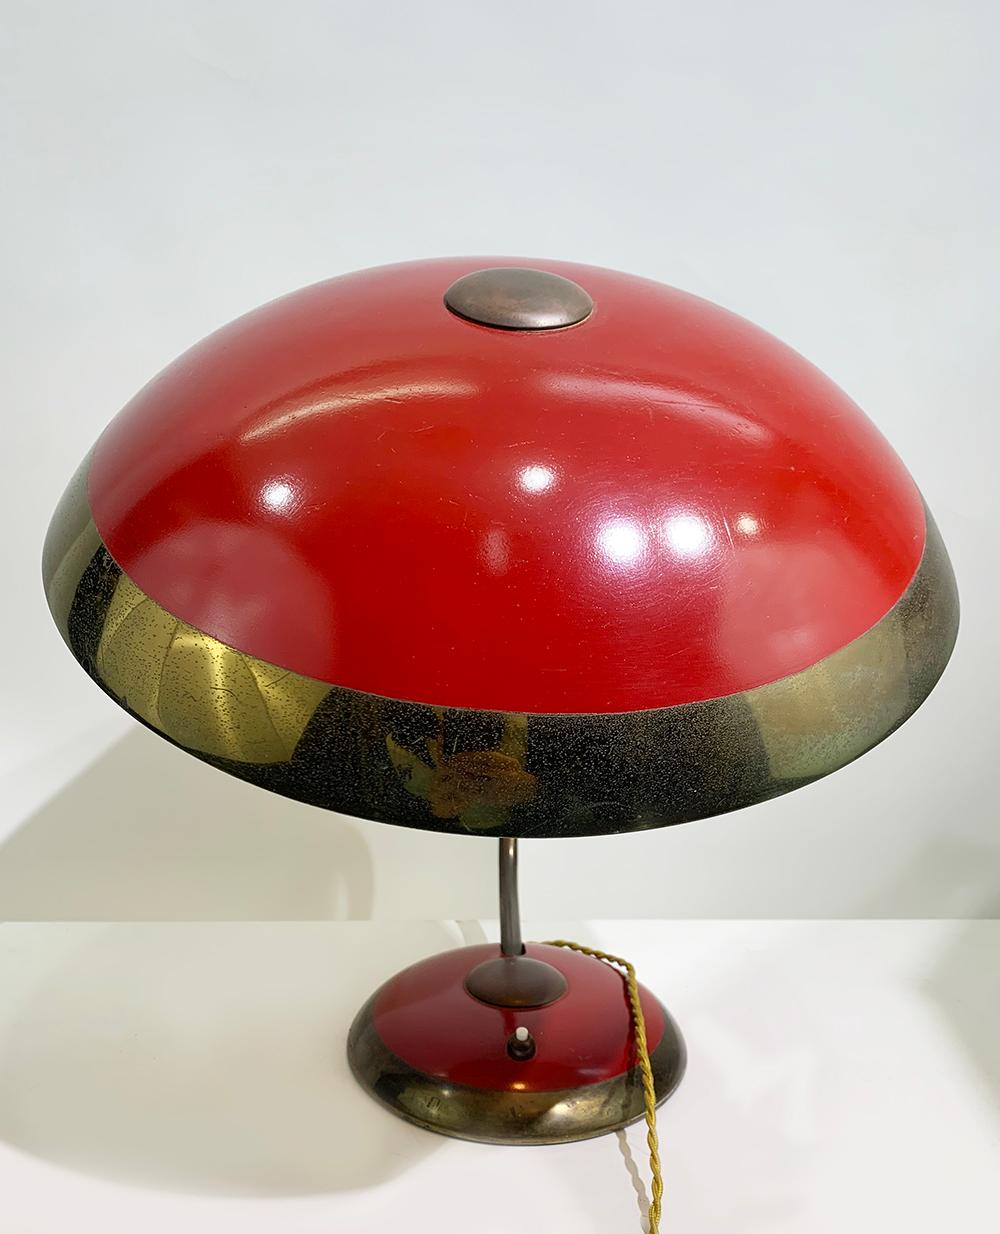 Lampe de bureau Bauhaus originale et non restaurée de Helo Leuchten.
Magnifique extérieur rouge avec des accents en laiton. 
Peut être livré et câblé pour un usage américain ou européen.